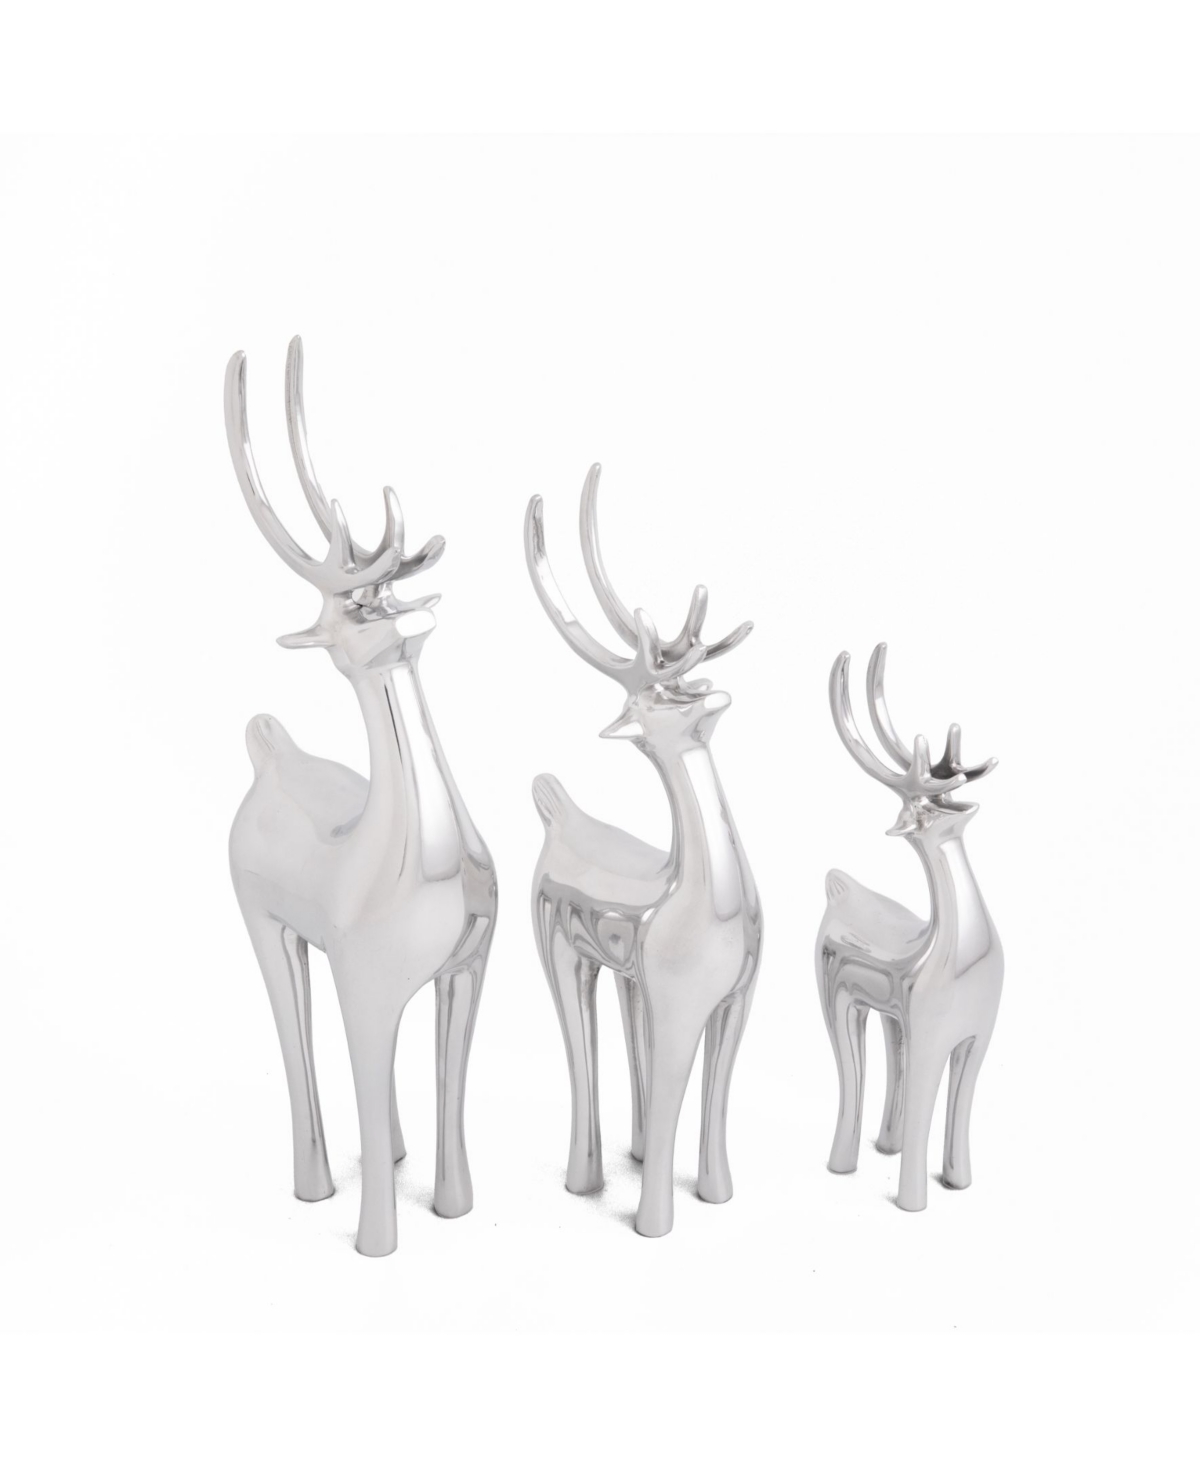 Vintage-Like Reindeer Set of 3 - Silver